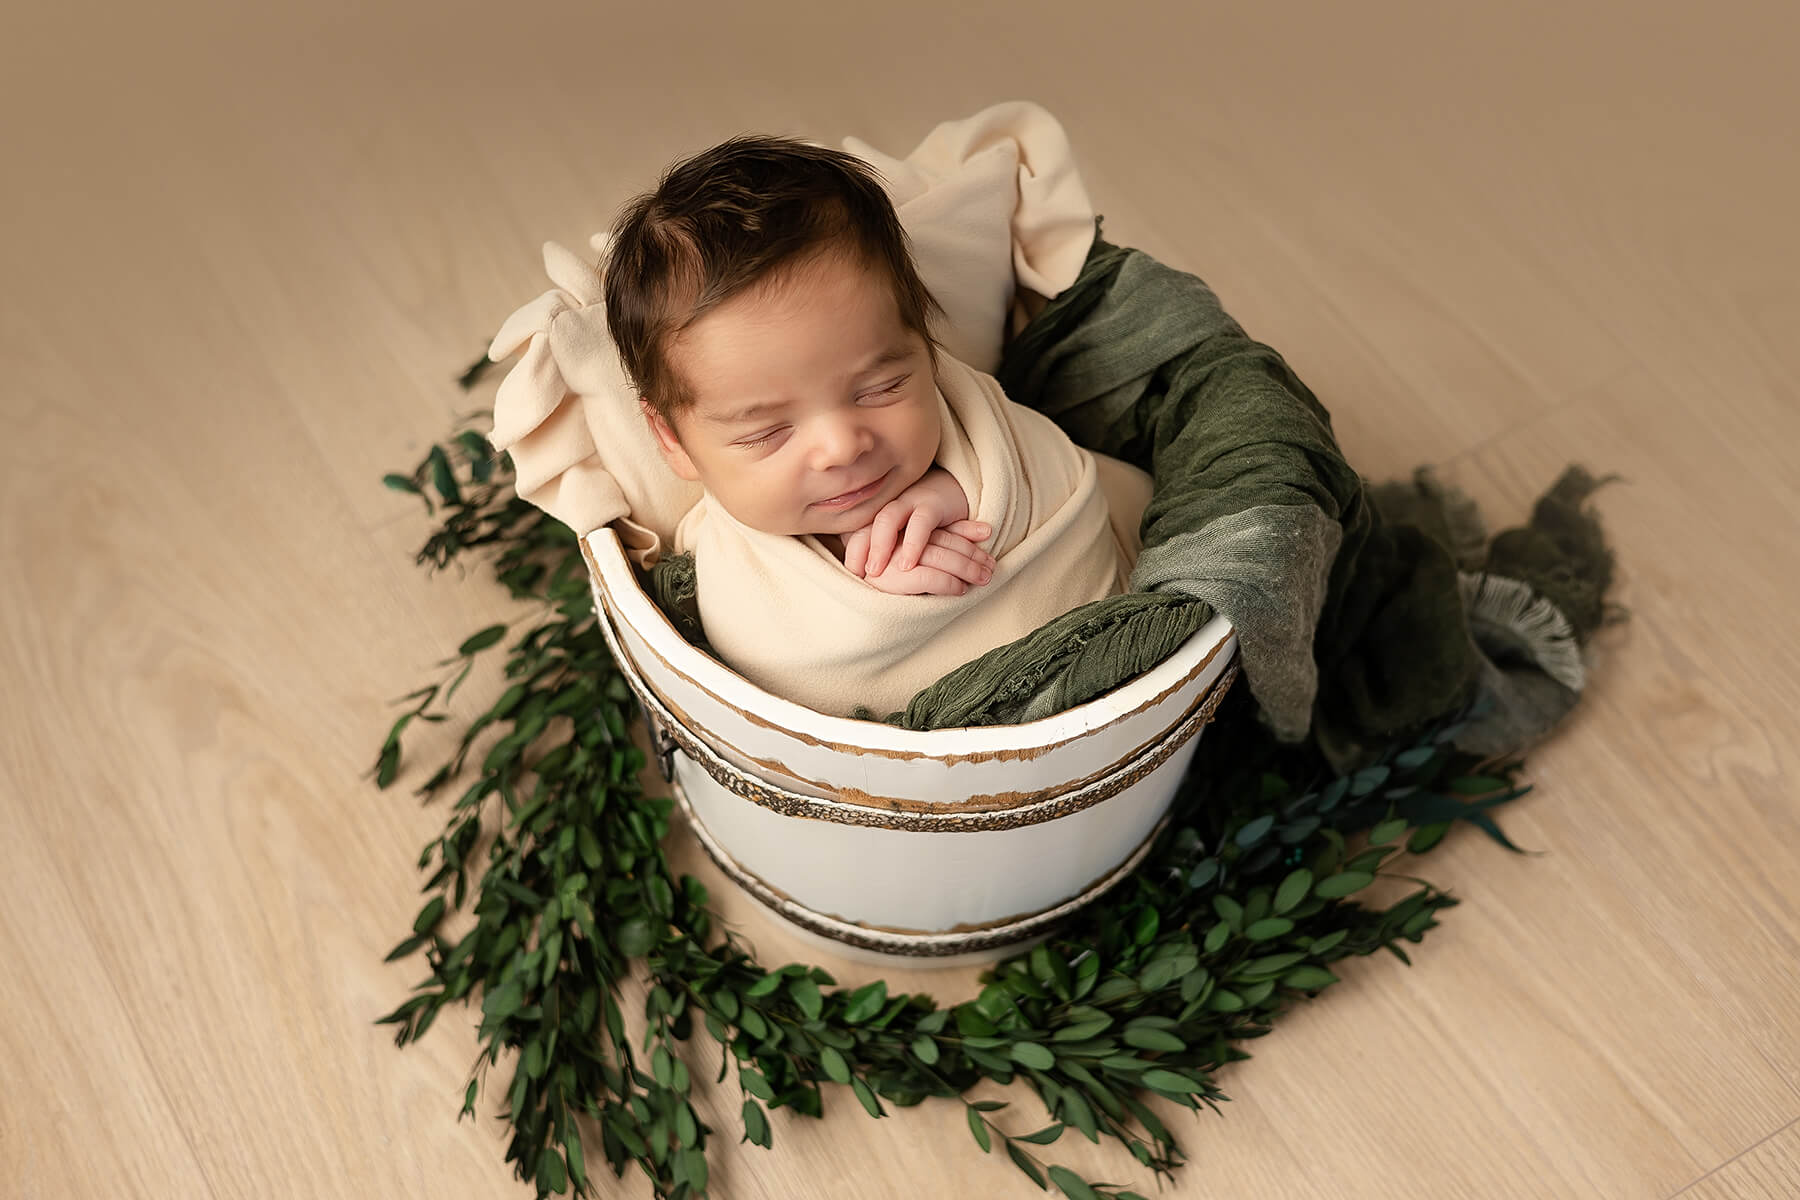 Une photographe capture des photos adorables d'un bébé nouveau-né endormi dans un seau entourée de verdure.